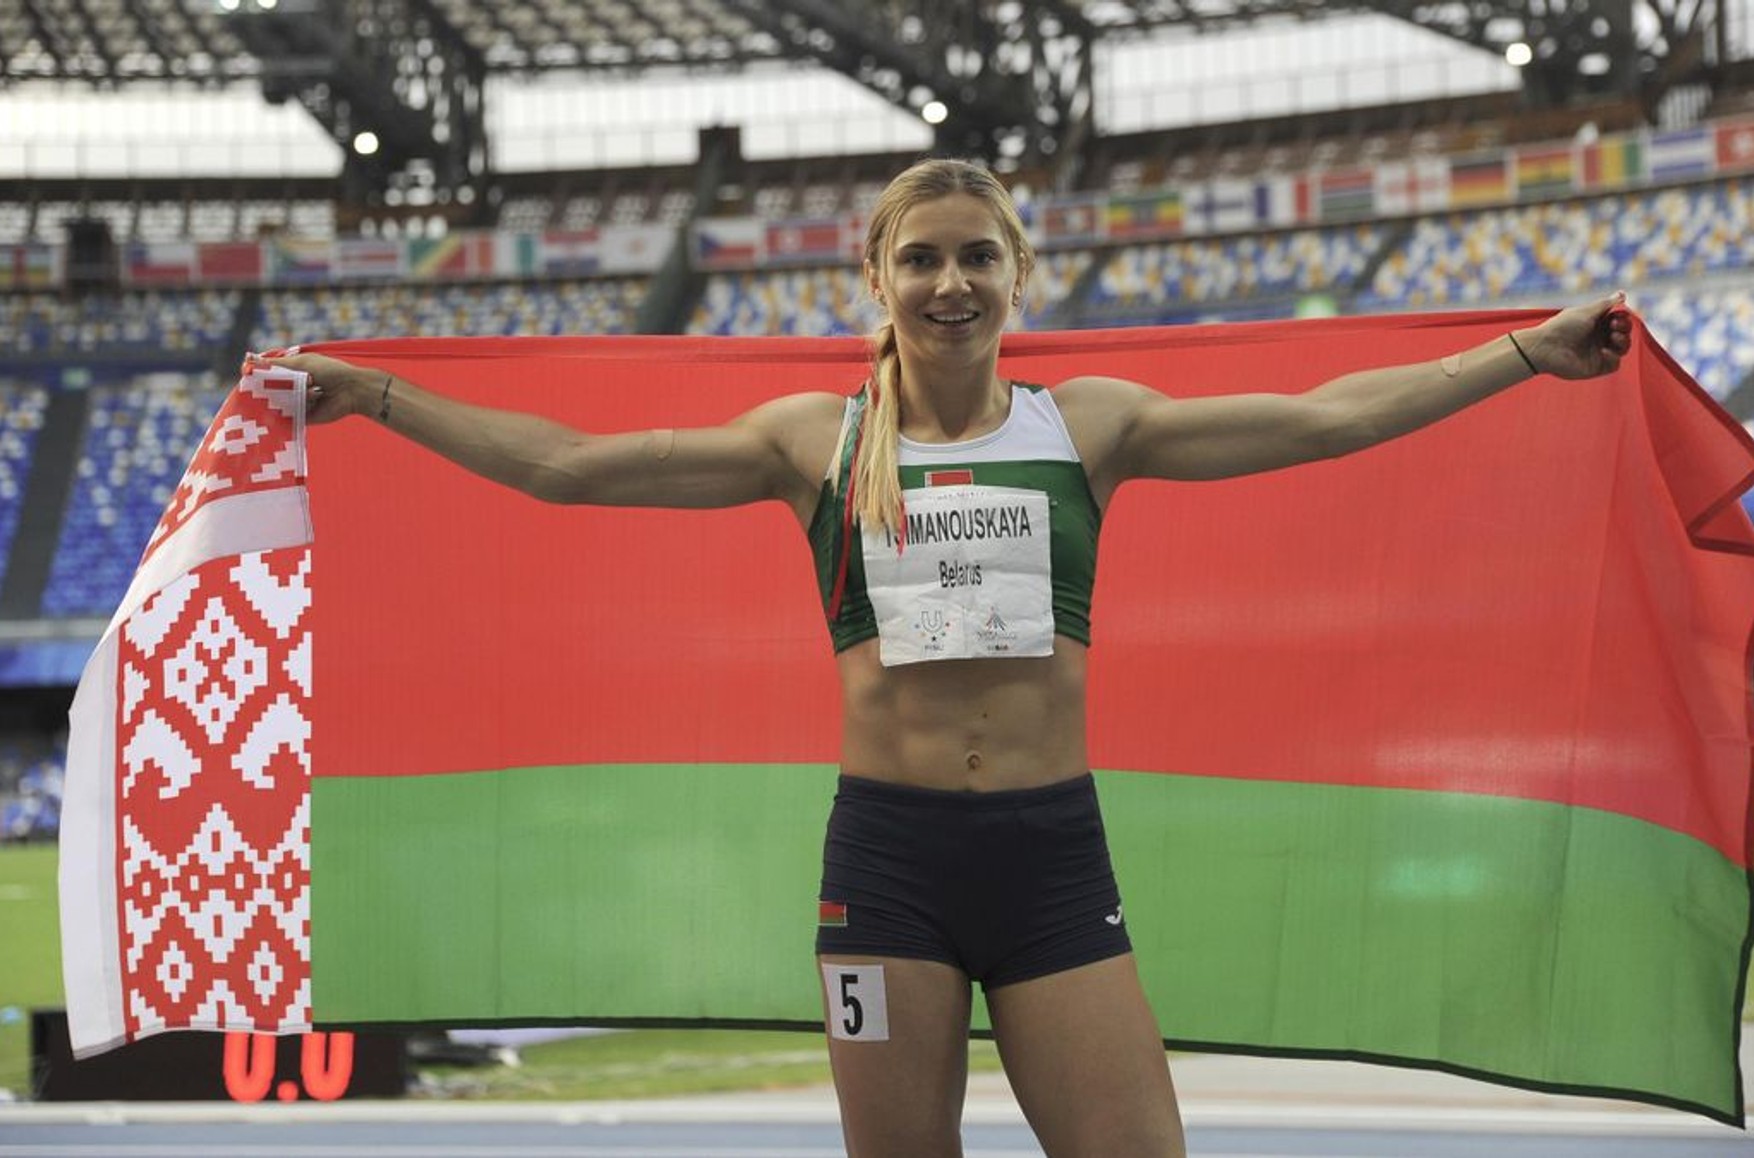 Білоруську спортсменку Тімановскій відвезли в безпечне місце. З нею знаходиться адвокат у справах біженців